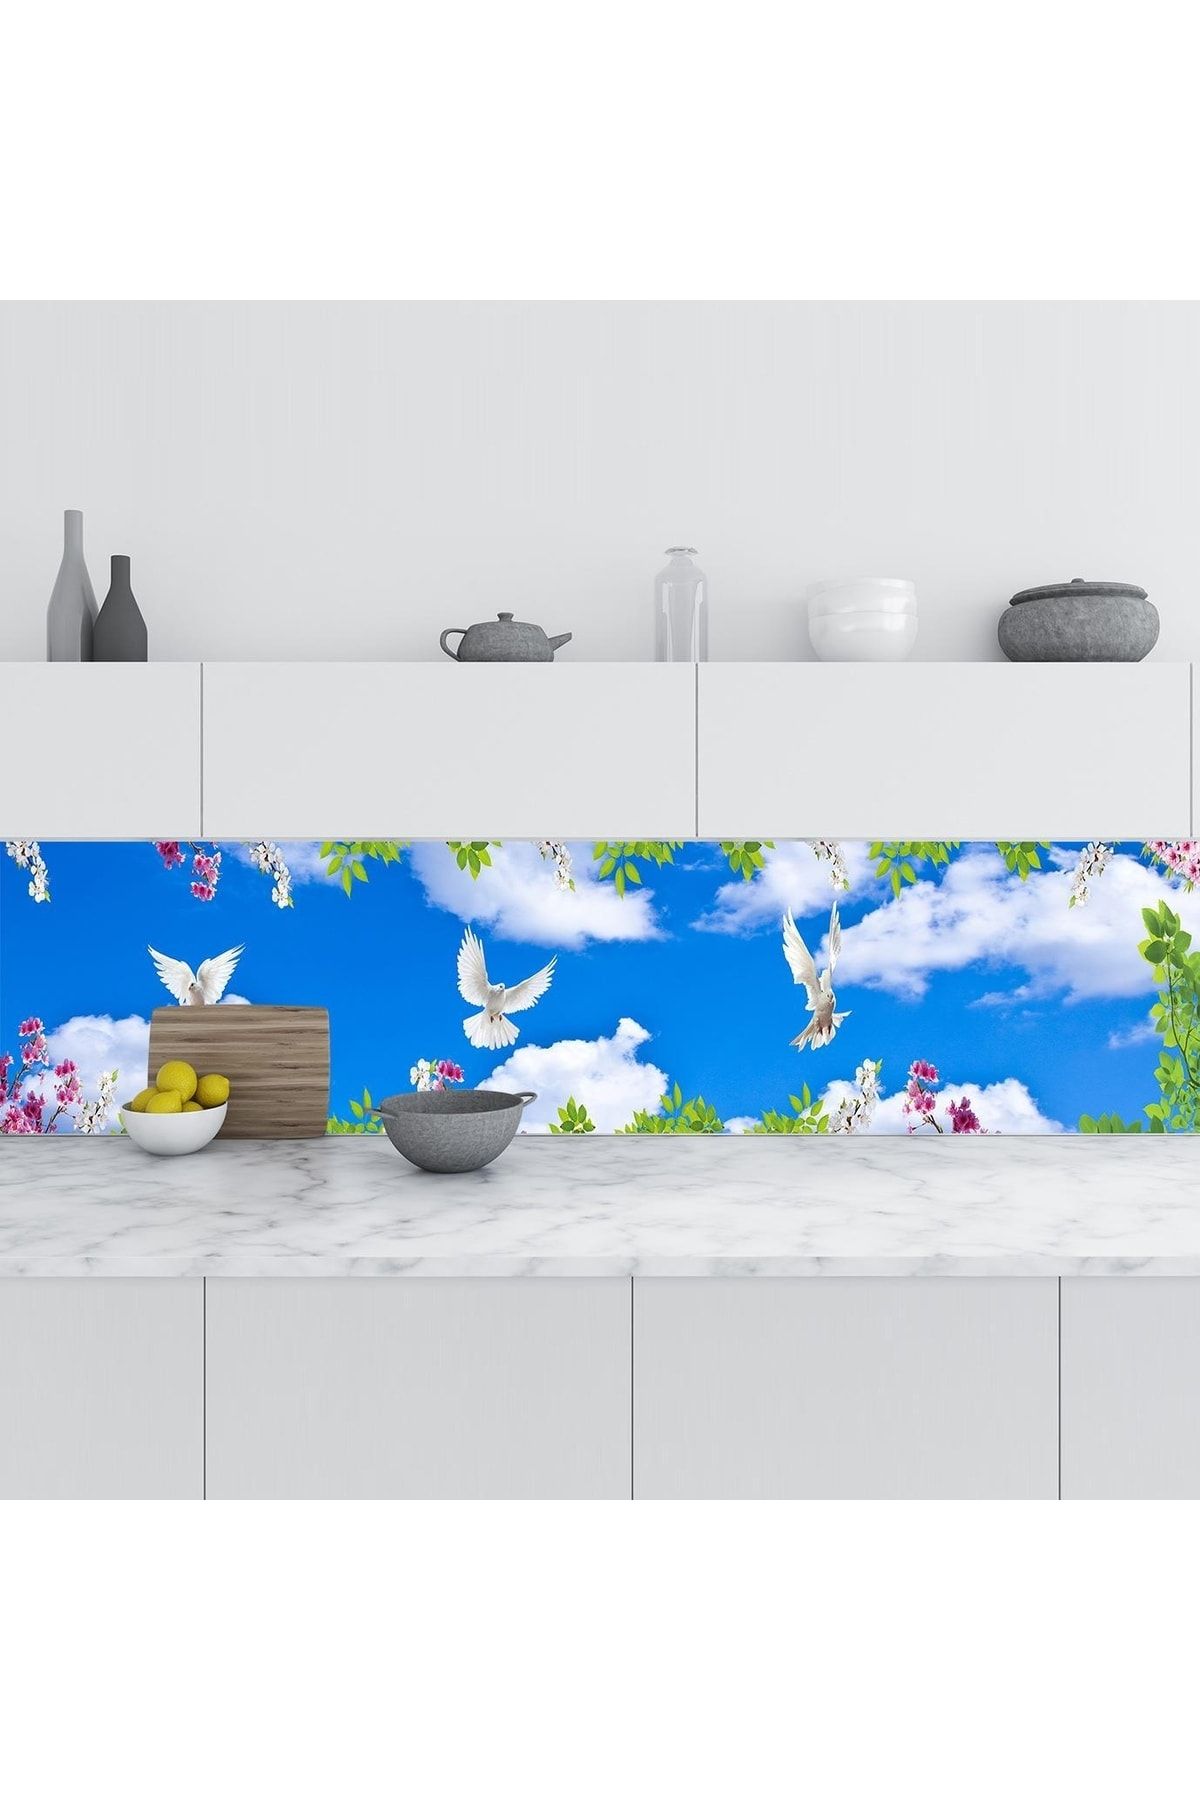 StickerArt Mutfak Tezgah Arası Folyo Fayans Kaplama Folyosu Gökyüzü Çiçekler 60x300 cm